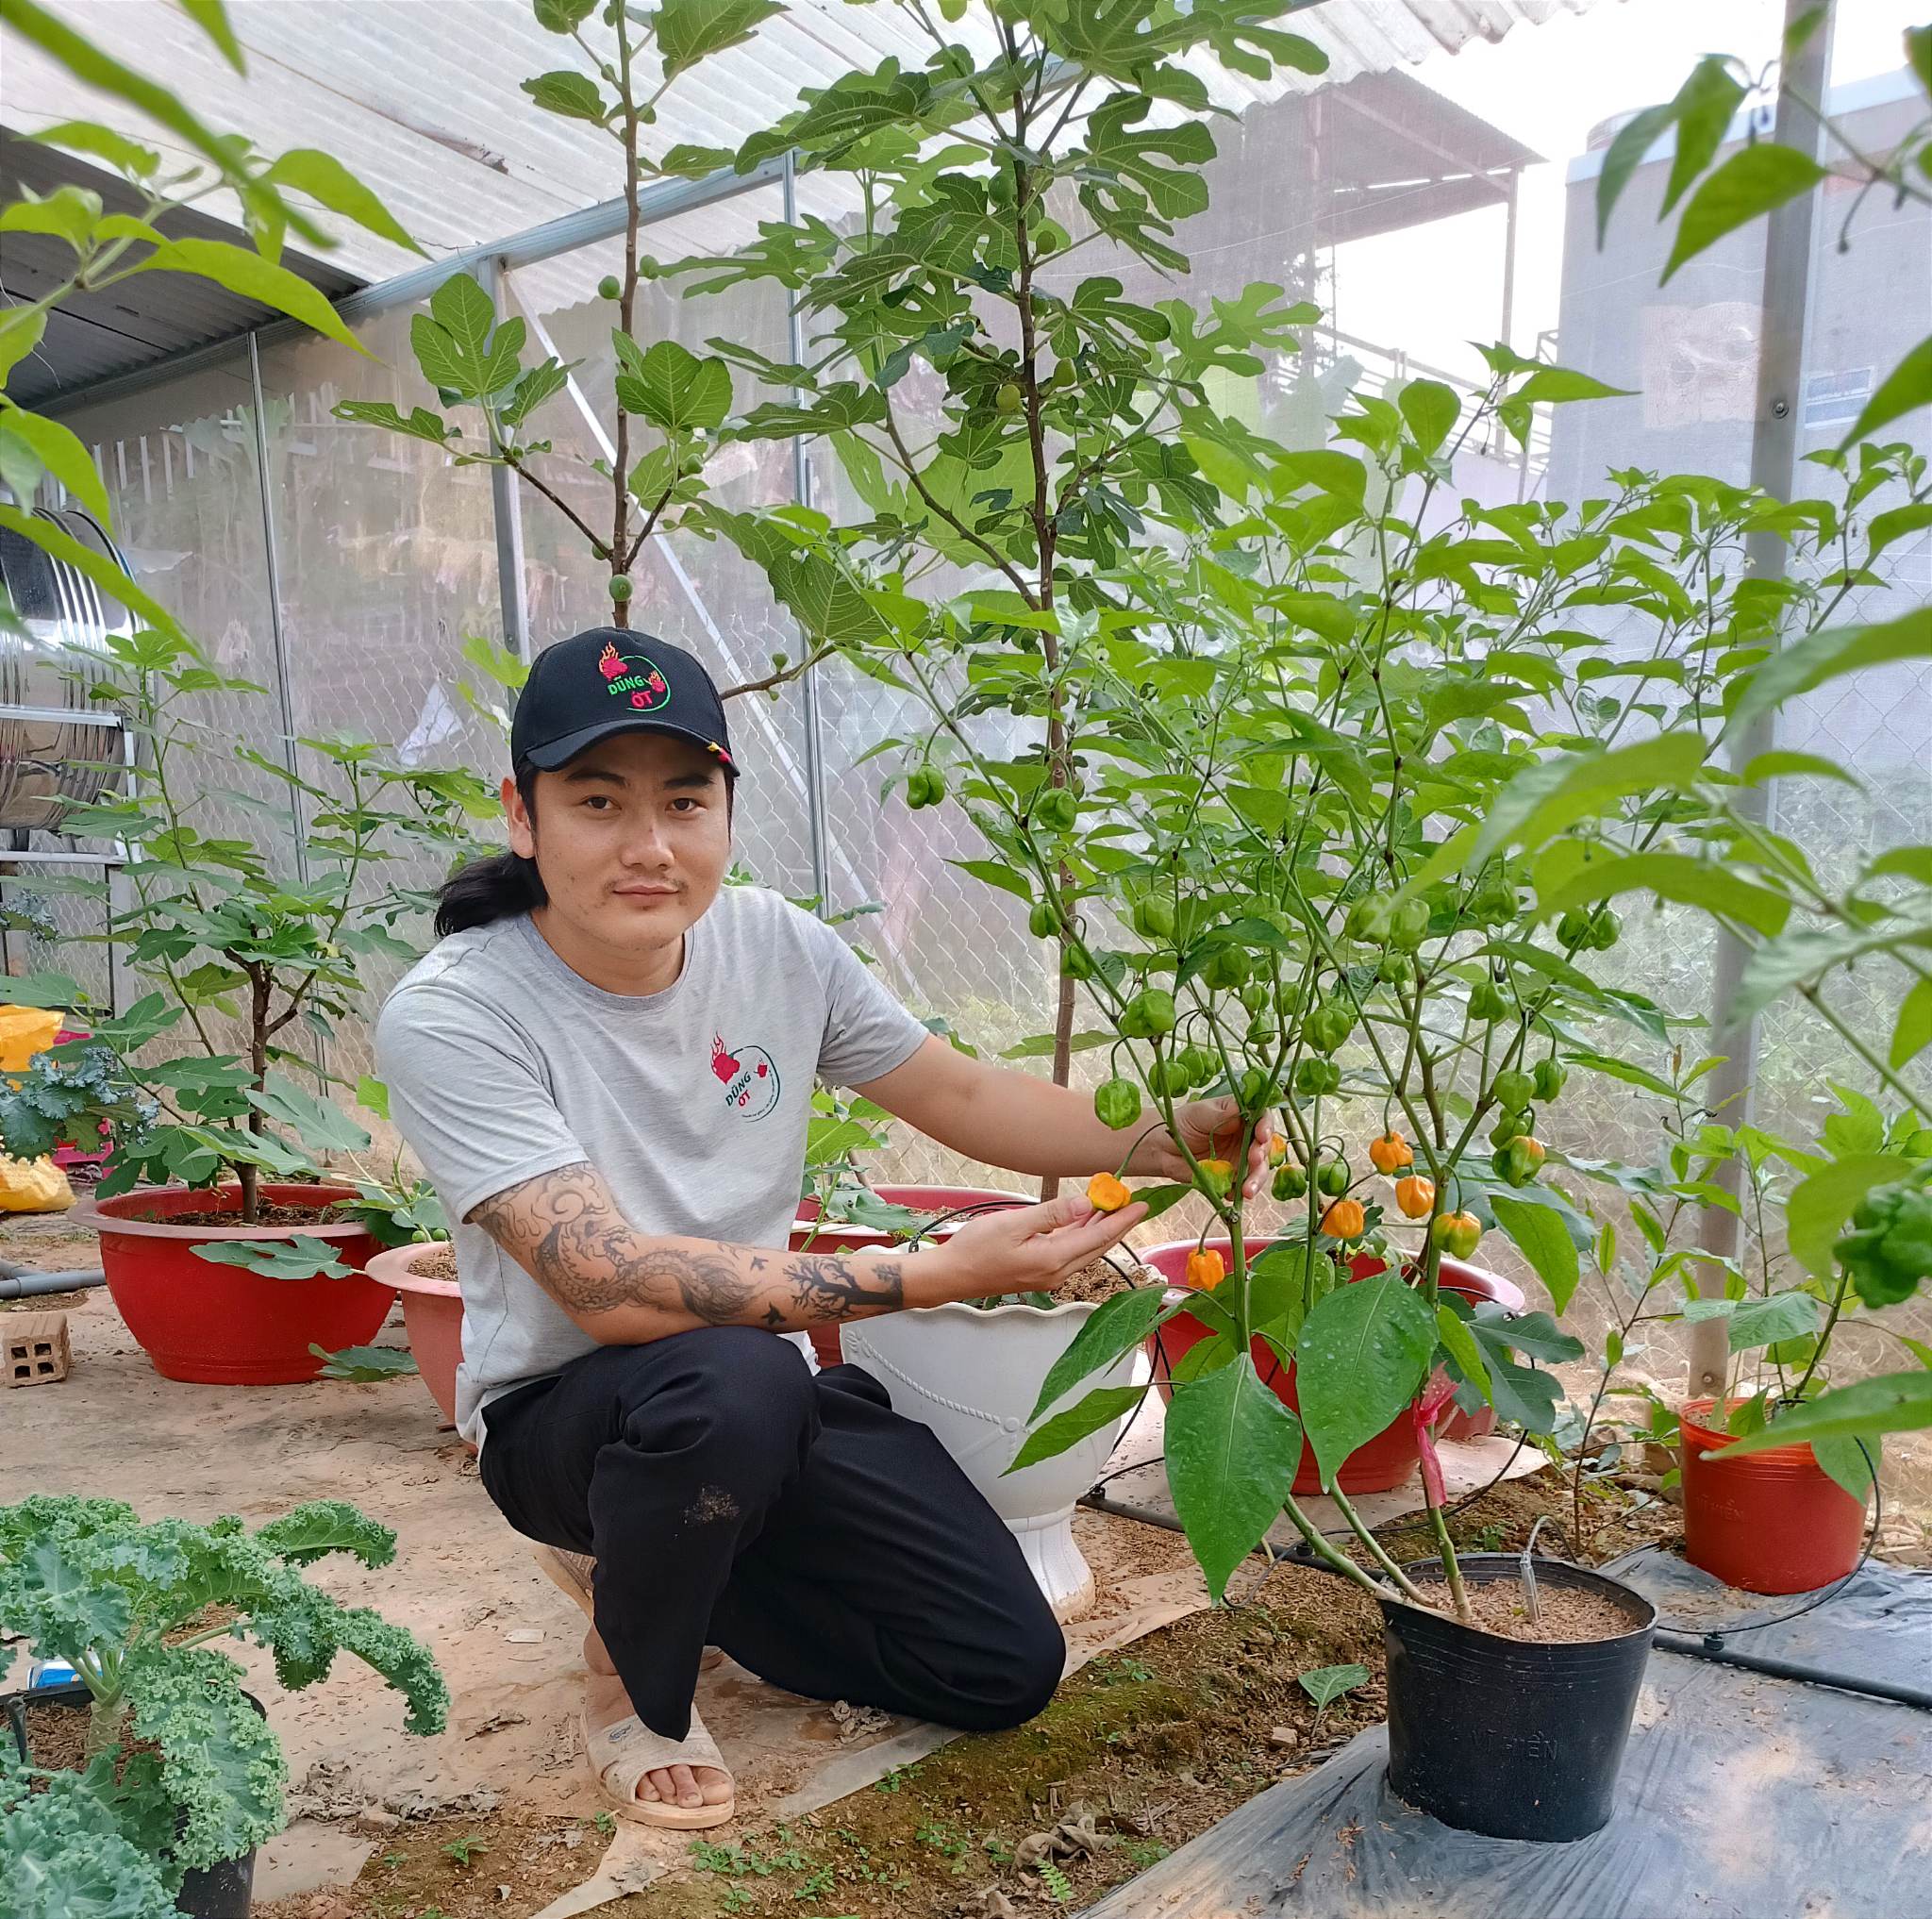 Trồng loại cây quen thuộc chỉ bán giống, 9X Lâm Đồng có ngày thu về 30 triệu đồng - 1